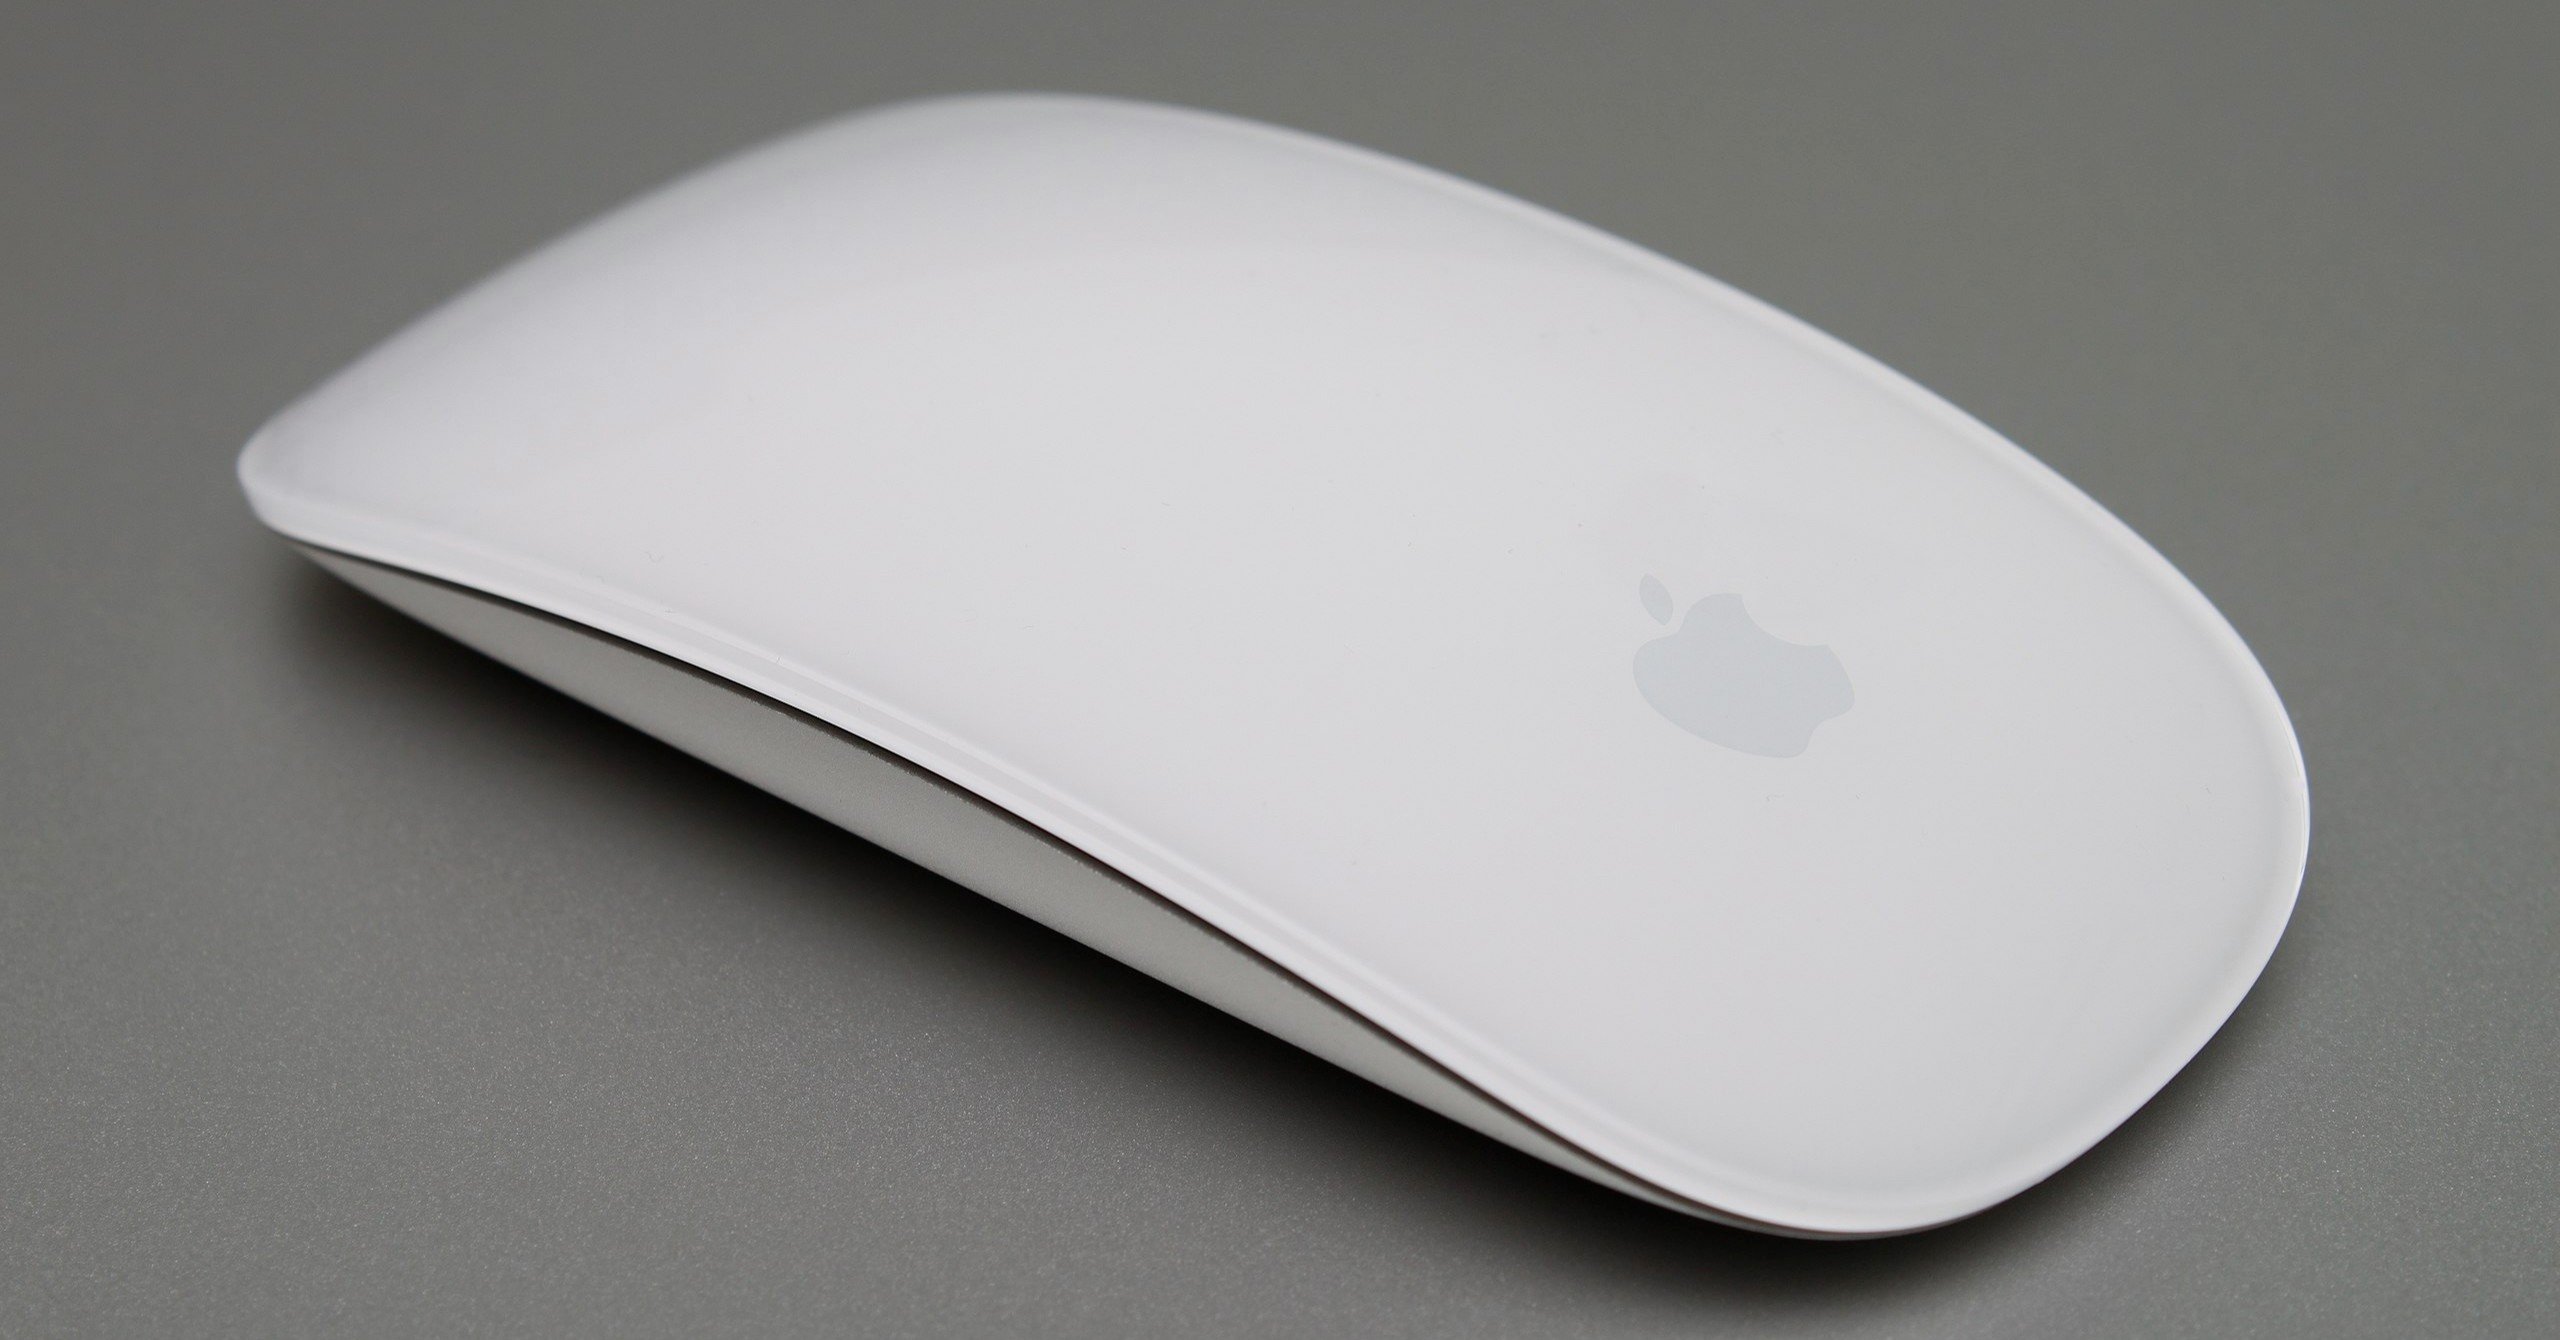 Macbookのmagic Mouse 使いやすくする設定を頑張ってみた Phanpy Note